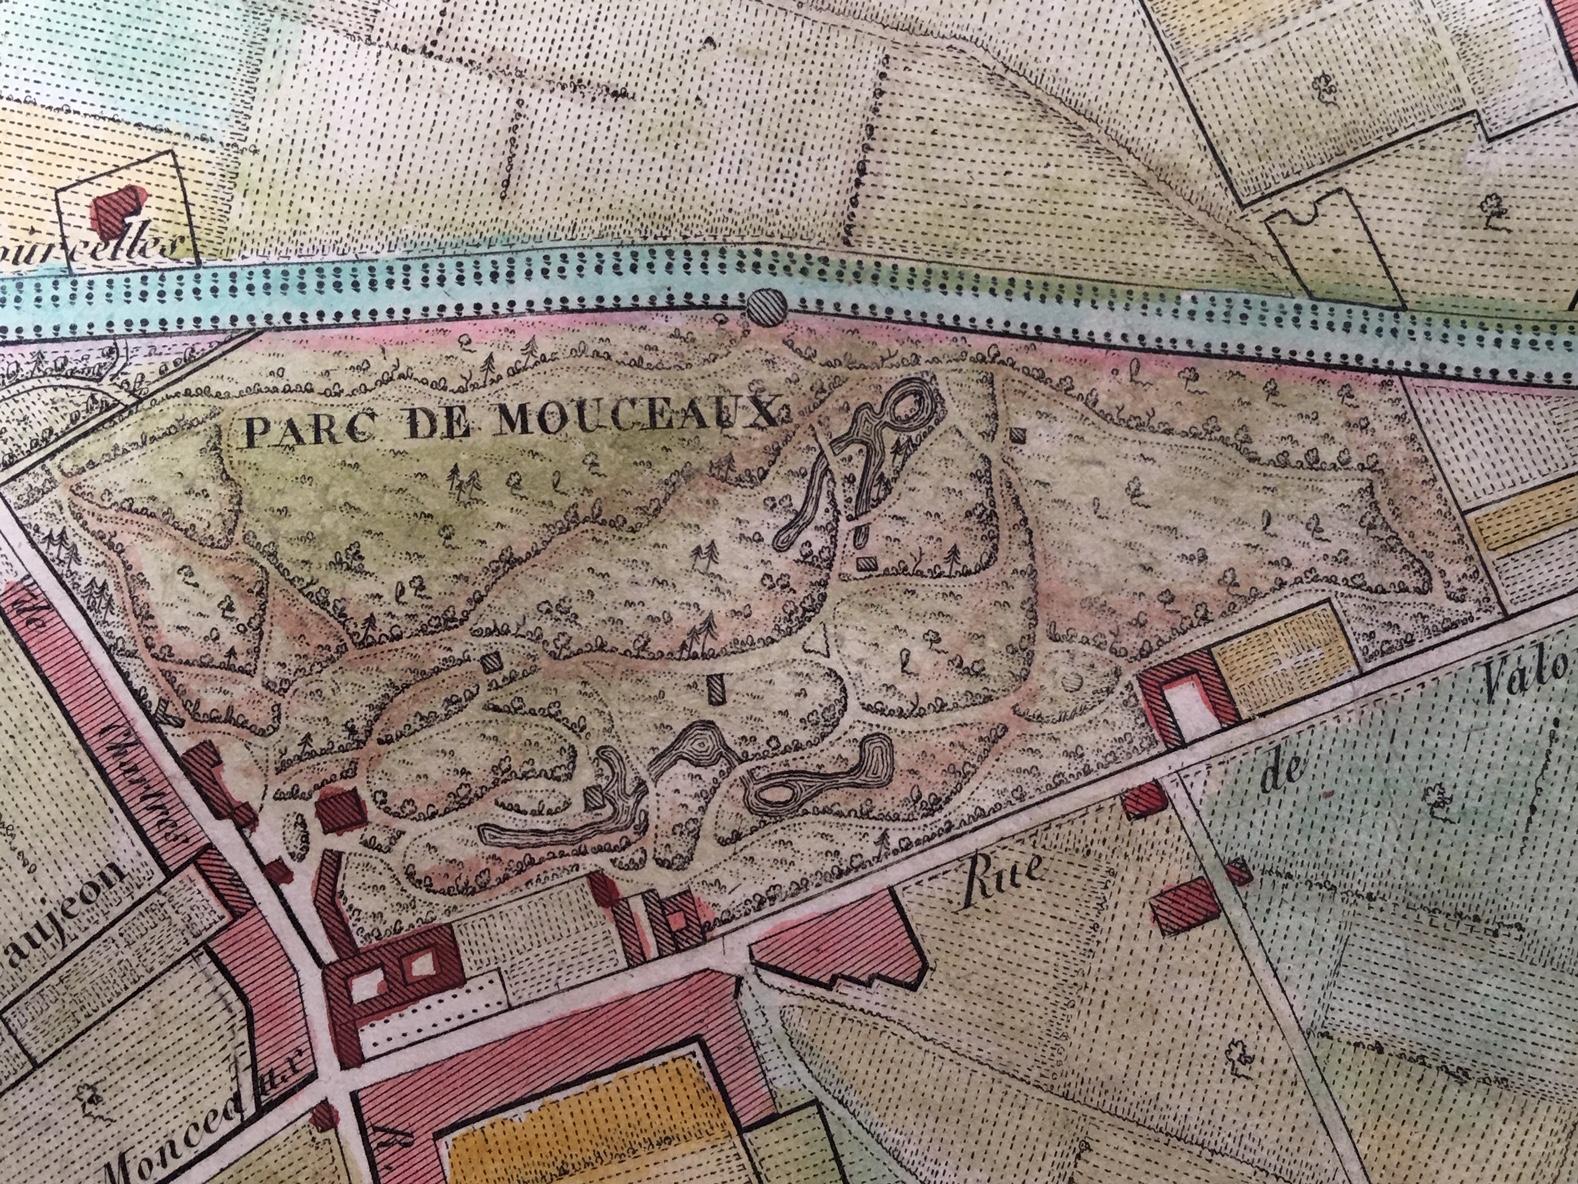 Plan de la Ville de Paris, 1816 - Realist Print by Unknown